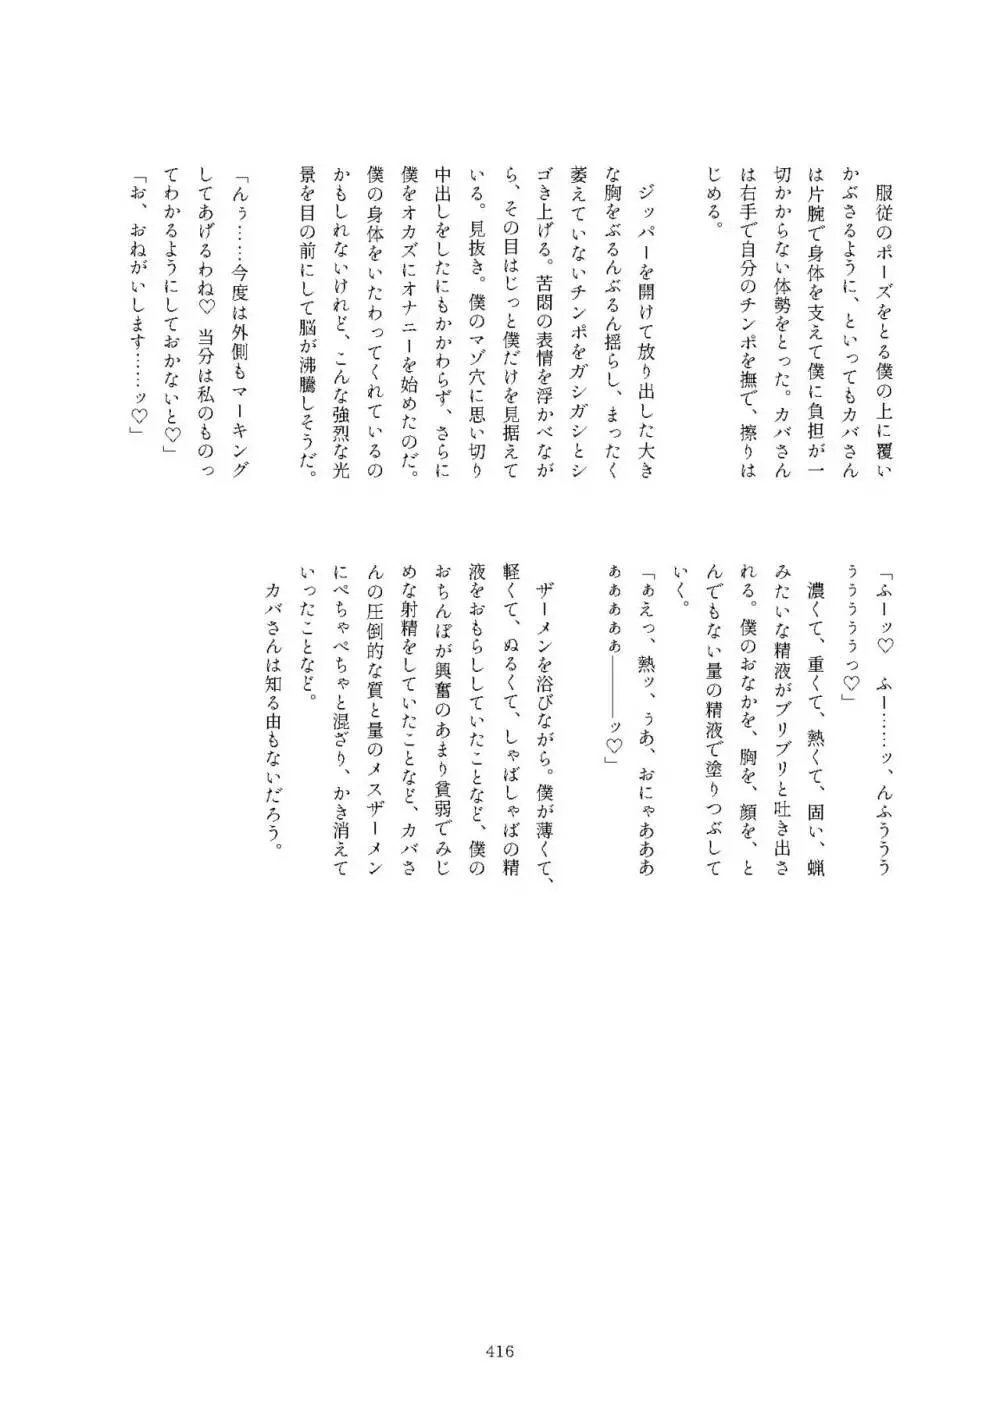 フレンズまえしっぽ合同誌 - page416